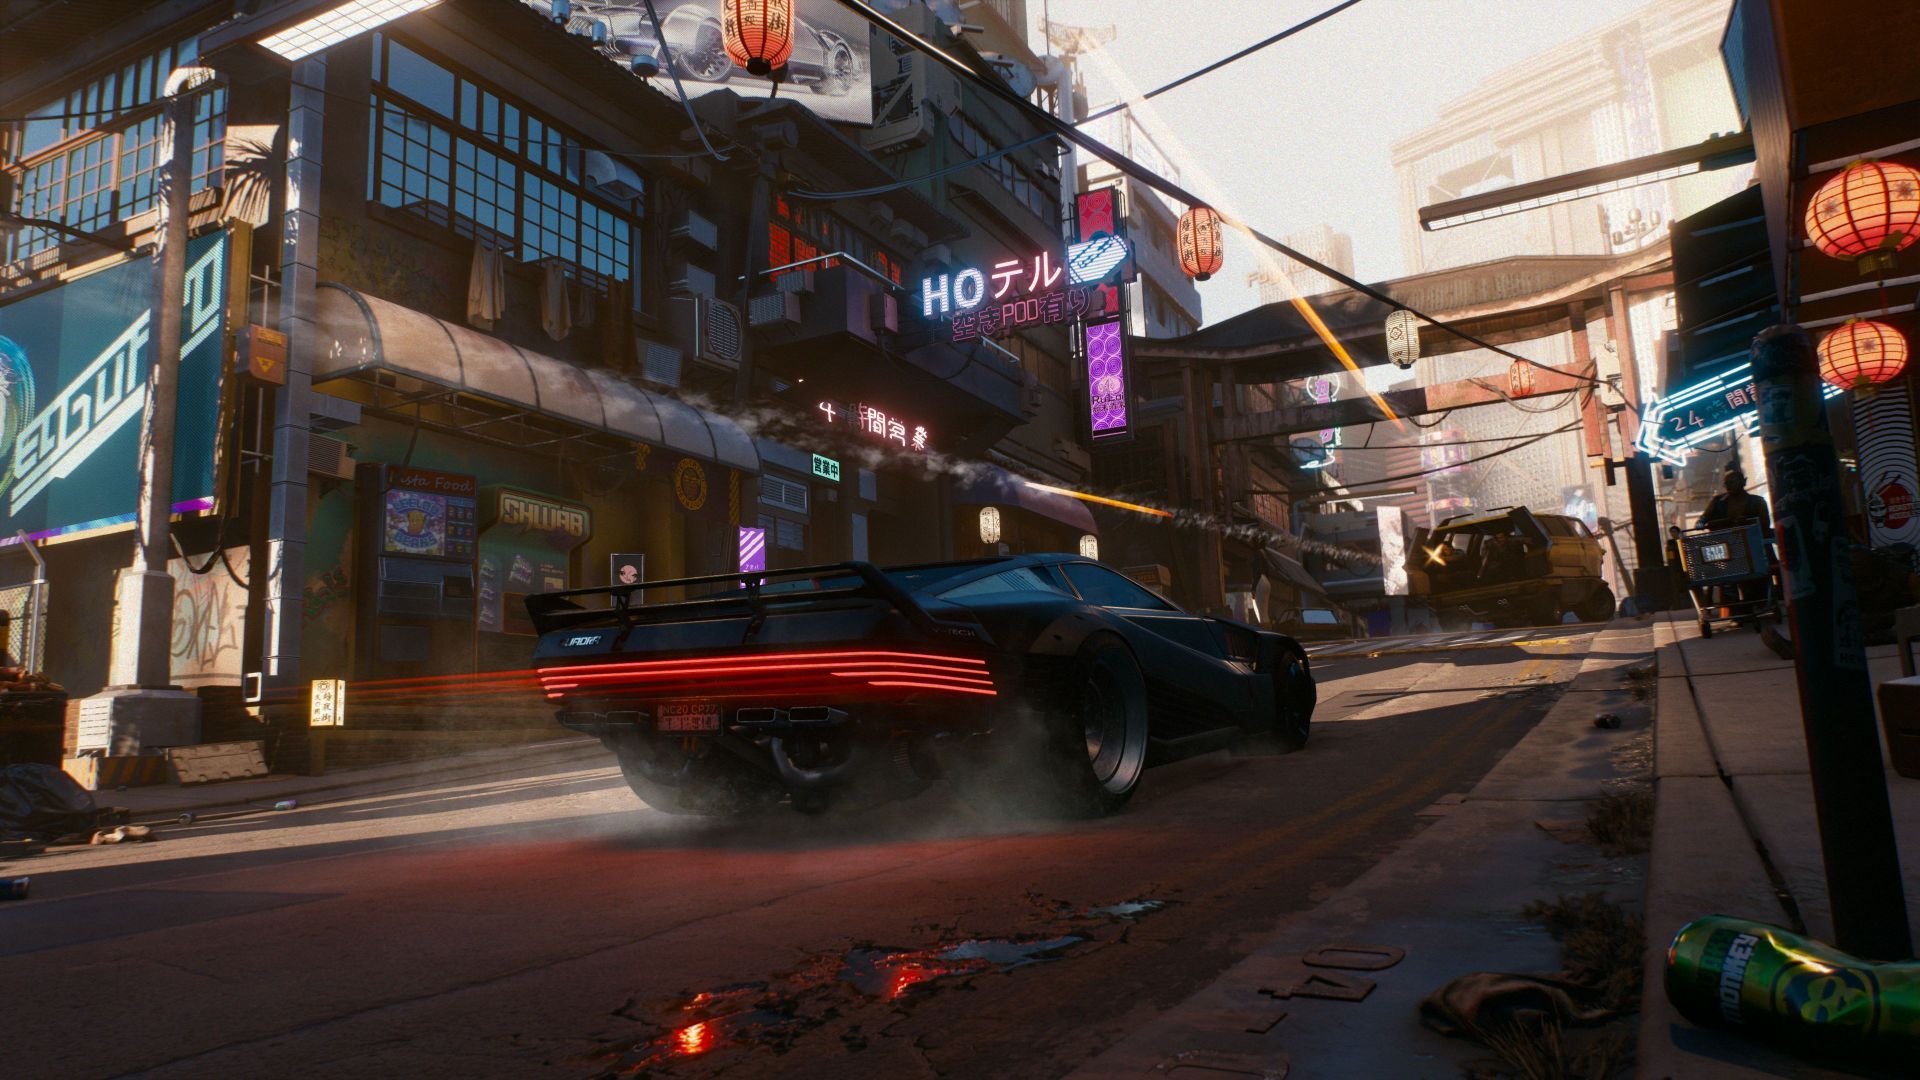 Cyberpunk 2077 : Phantom Liberty étale ses nouveautés de gameplay dans un trailer explosif